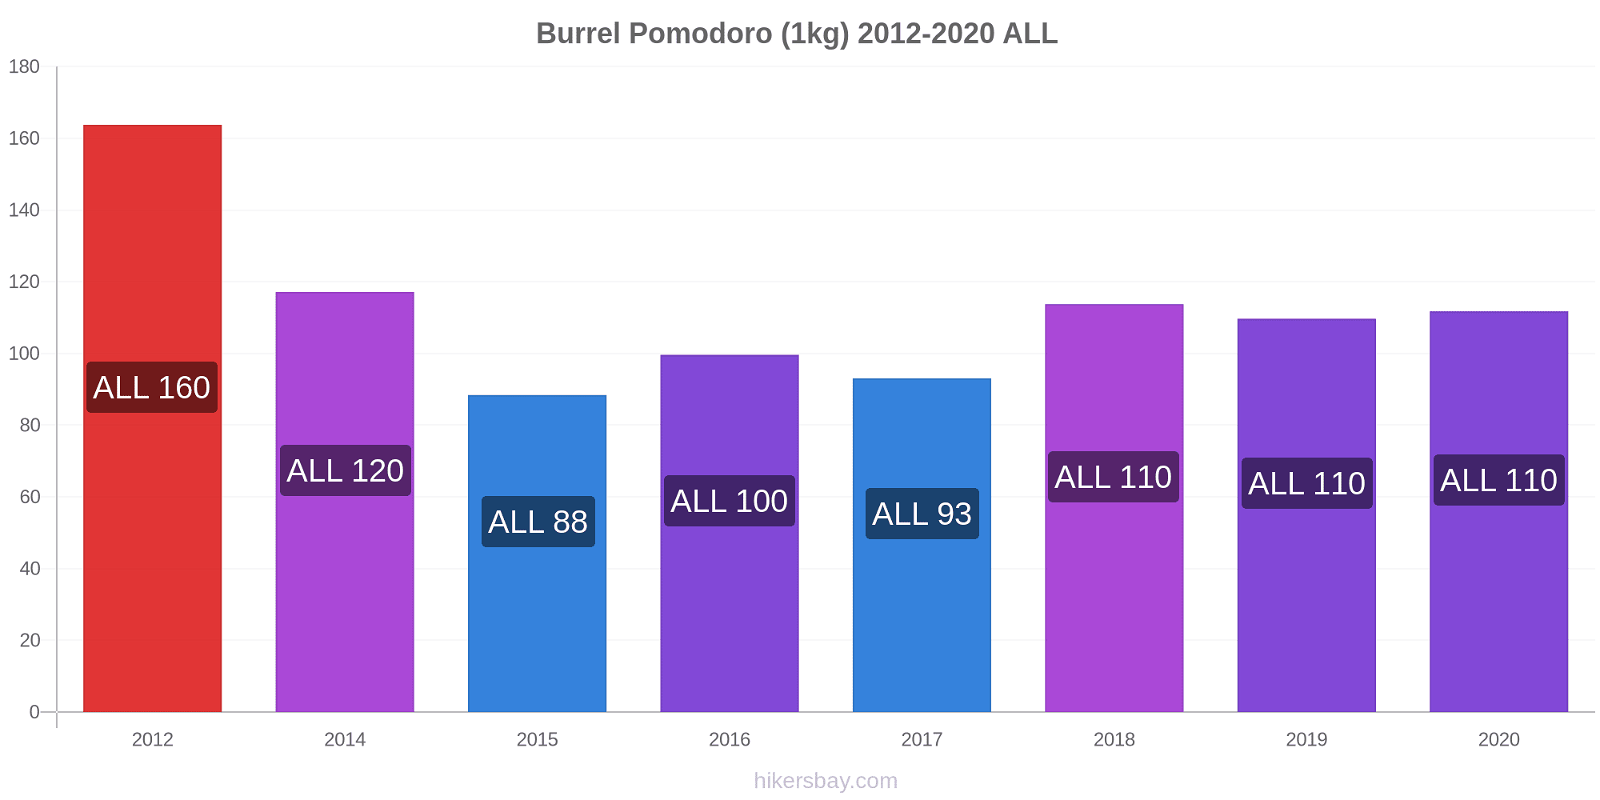 Burrel variazioni di prezzo Pomodoro (1kg) hikersbay.com